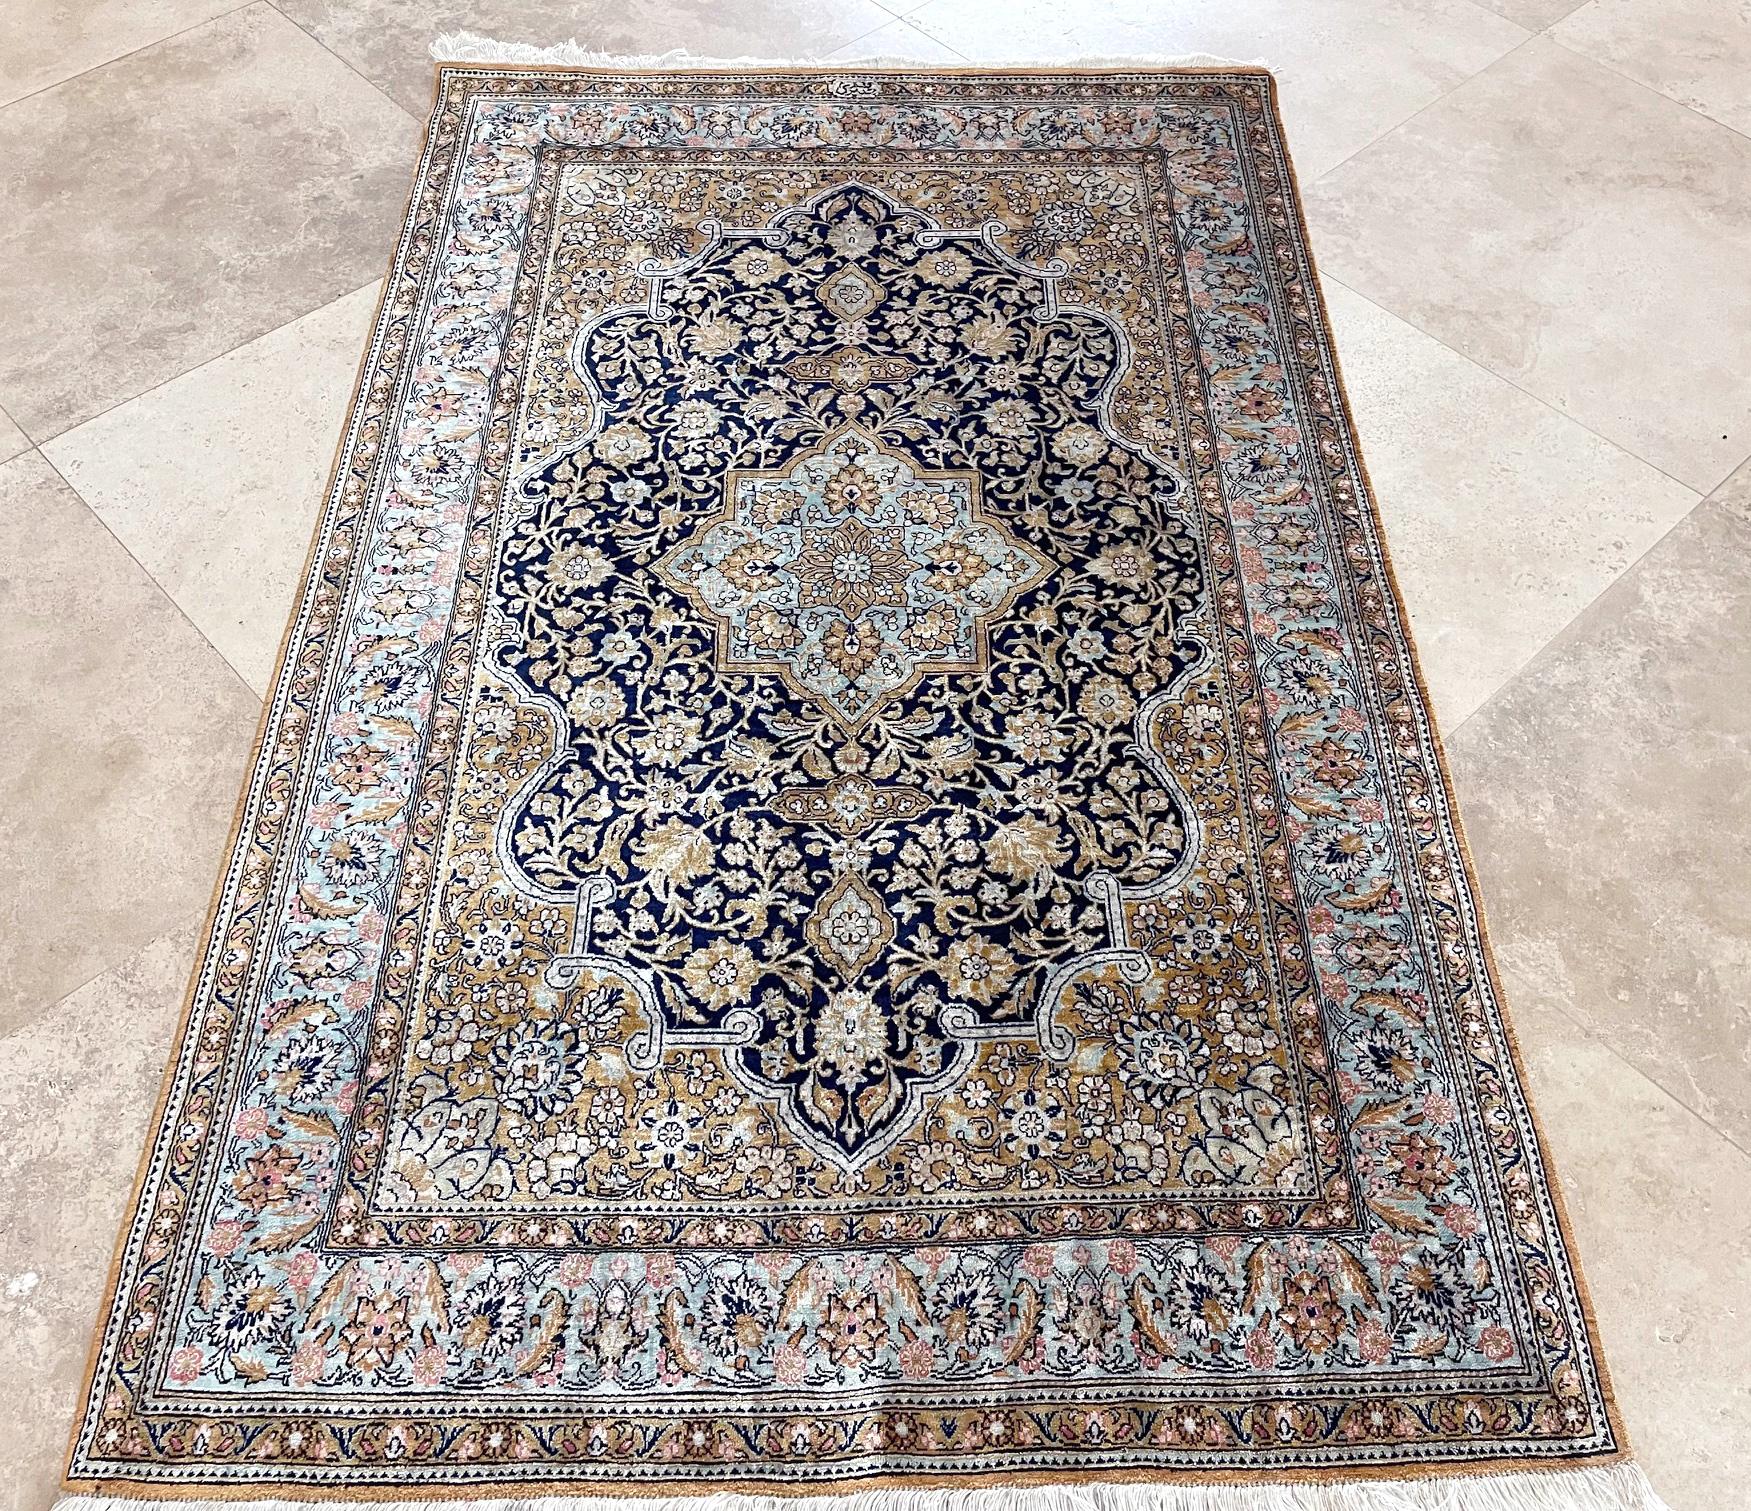 Dies ist ein sehr feiner Teppich, gewebt in der Stadt Qum, Iran. Dieser Teppich hat einen Seidenflor und ein Seidenfundament mit einer atemberaubenden Design- und Farbkombination, die auf einem dunkelblauen Hintergrund mit einer türkisfarbenen